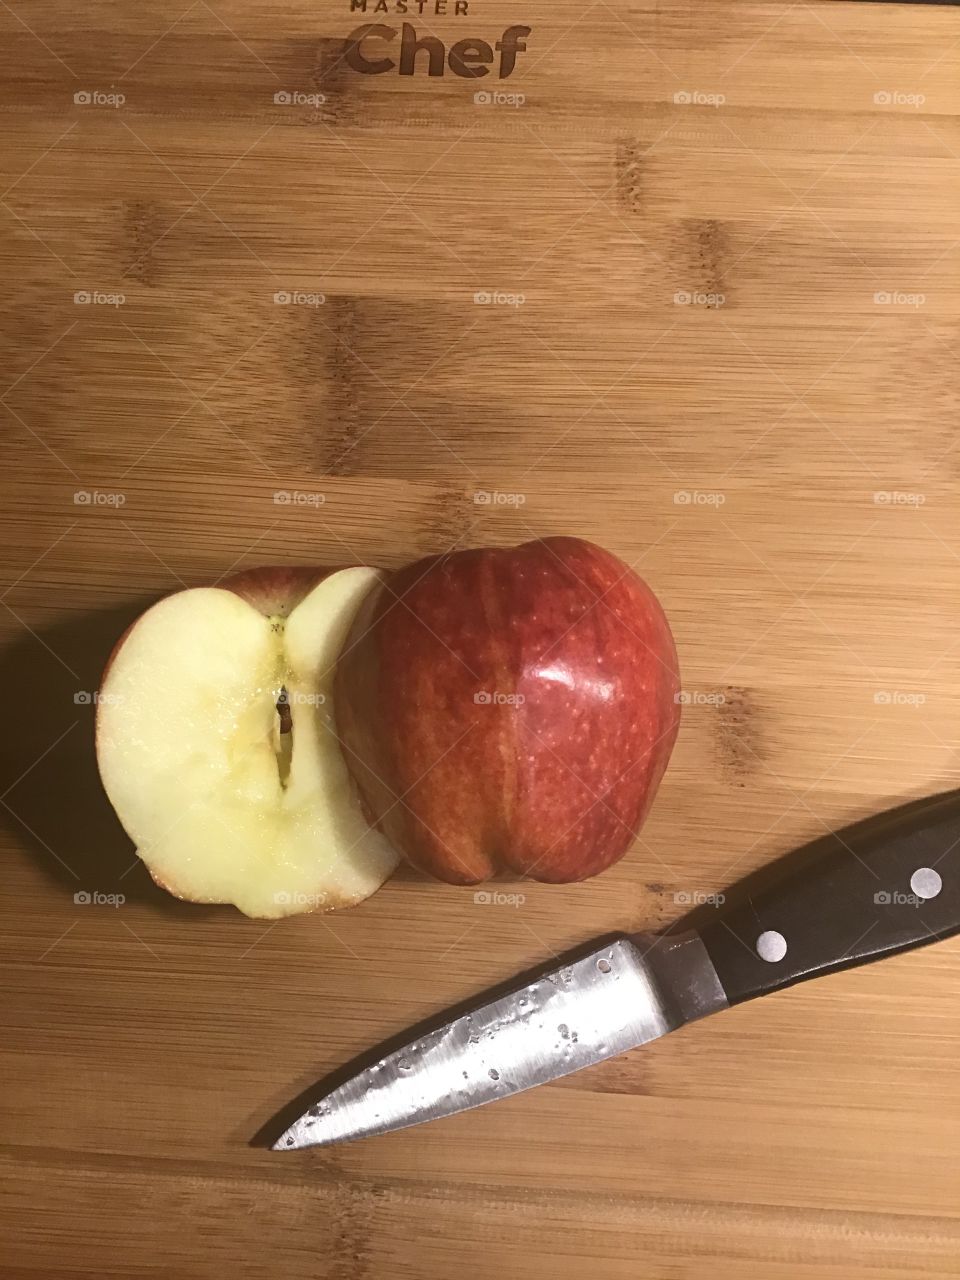 An apple for breakfast